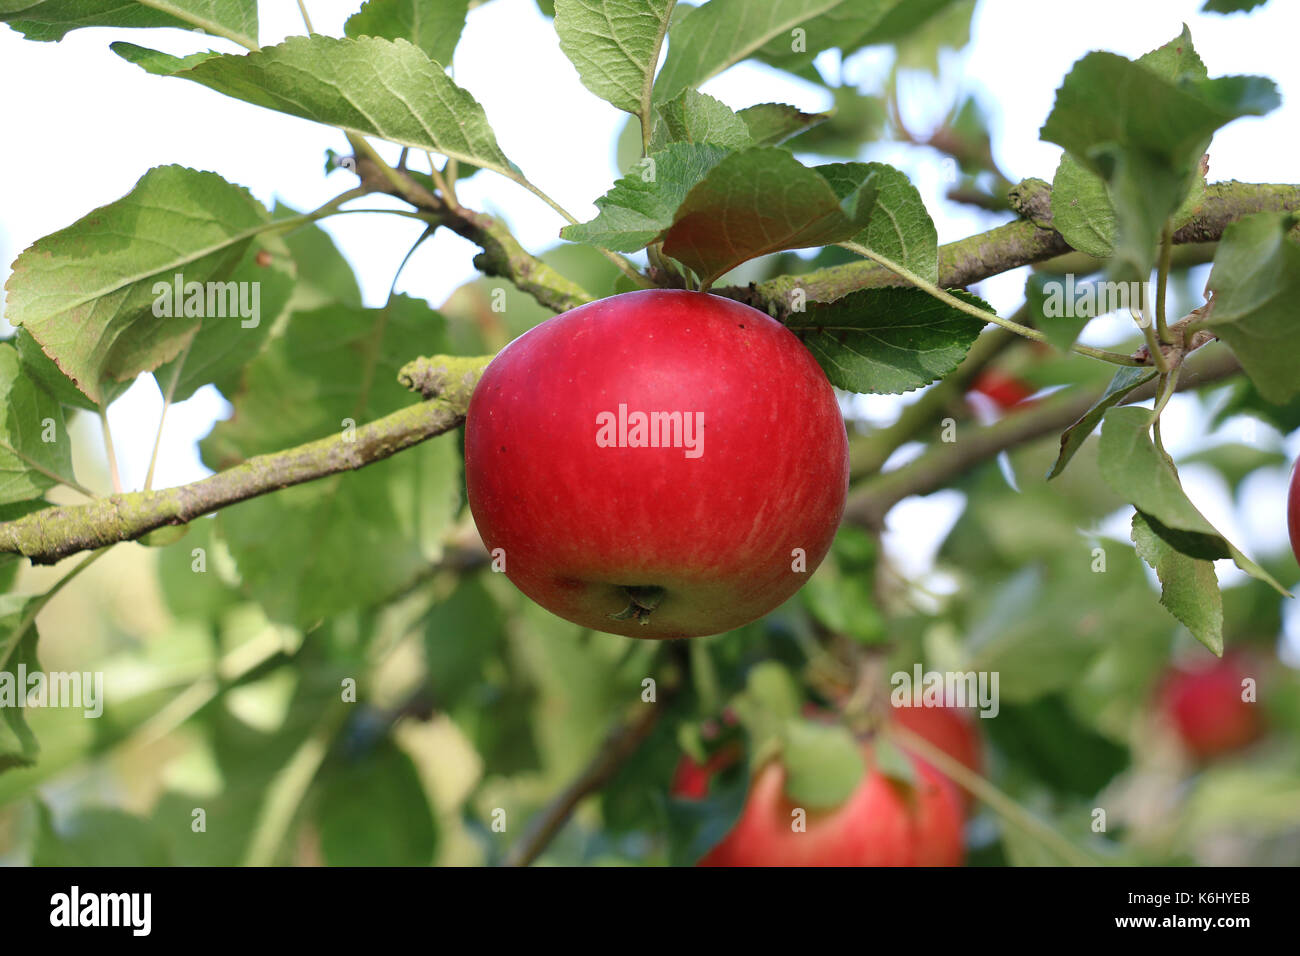 Découverte rouge fruits apple, Malus domestica, suspendu à la branche d'un pommier à la fin de l'été, Shropshire, Angleterre. Banque D'Images